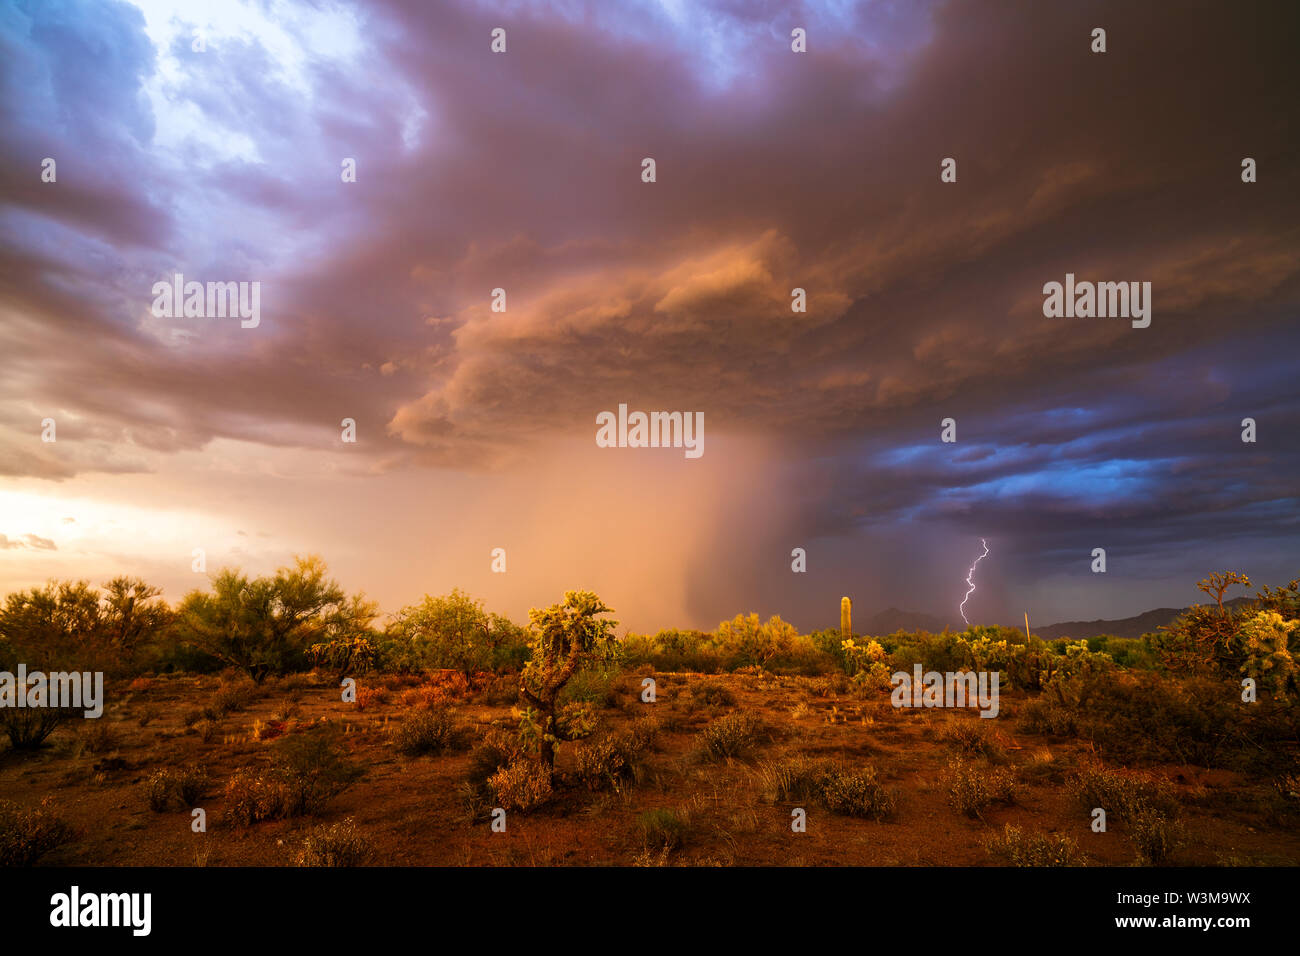 Ein Monsun-Gewitter mit Blitzen, dunklen Wolken und starkem Regen zieht durch die Wüste in der Nähe von Santa Rosa, Arizona Stockfoto